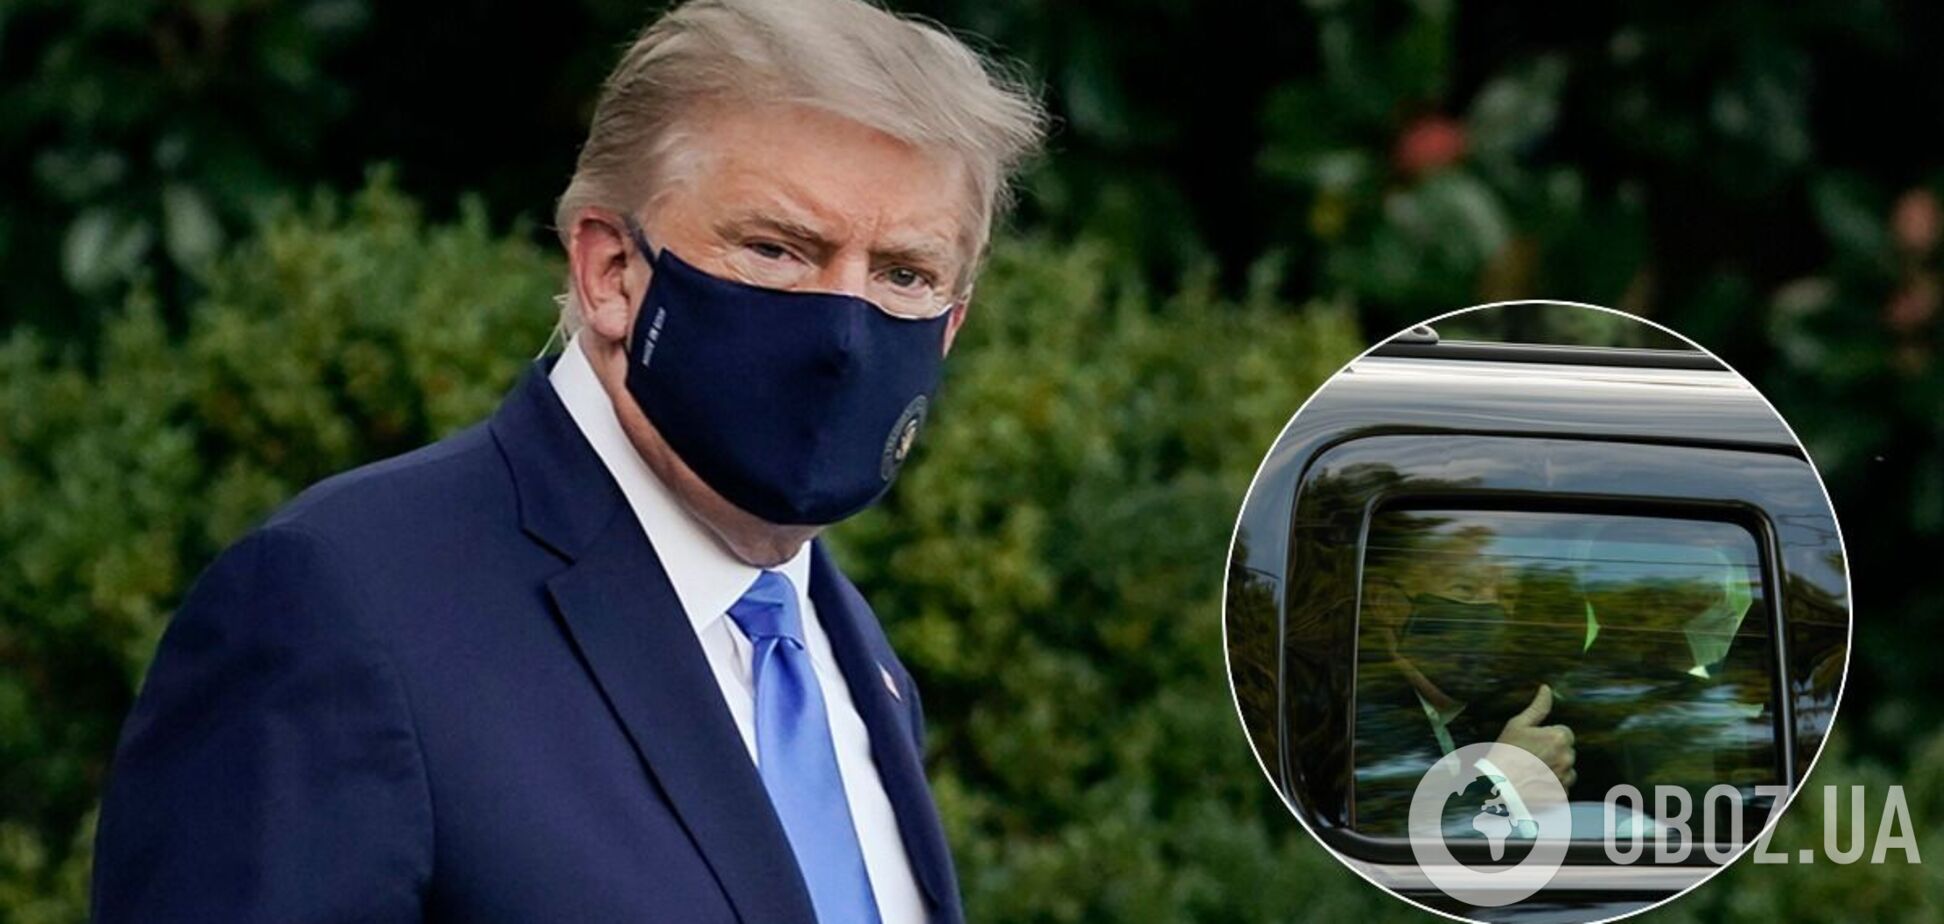 Трамп 'сбежал' из клиники и показался перед поклонниками в маске. Фото и видео